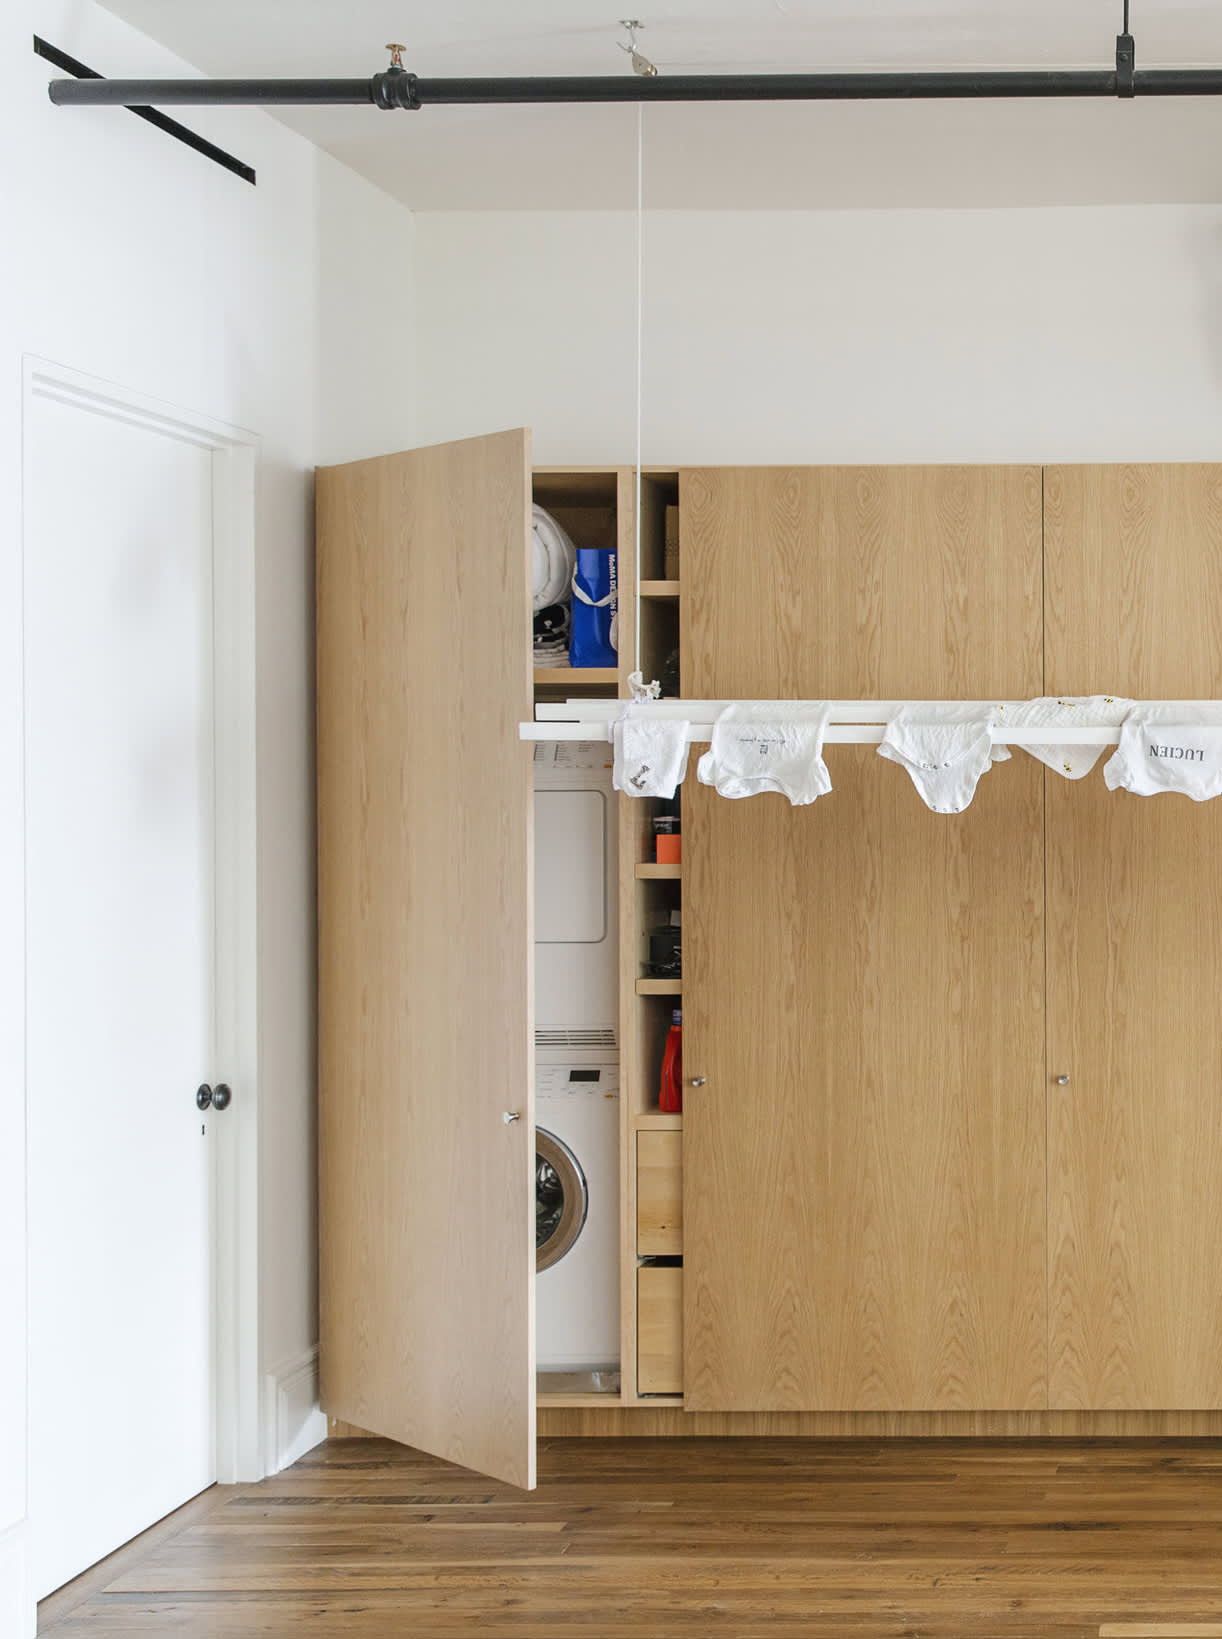 Bigger Laundry Room Or Bigger Closet? - Emily A. Clark